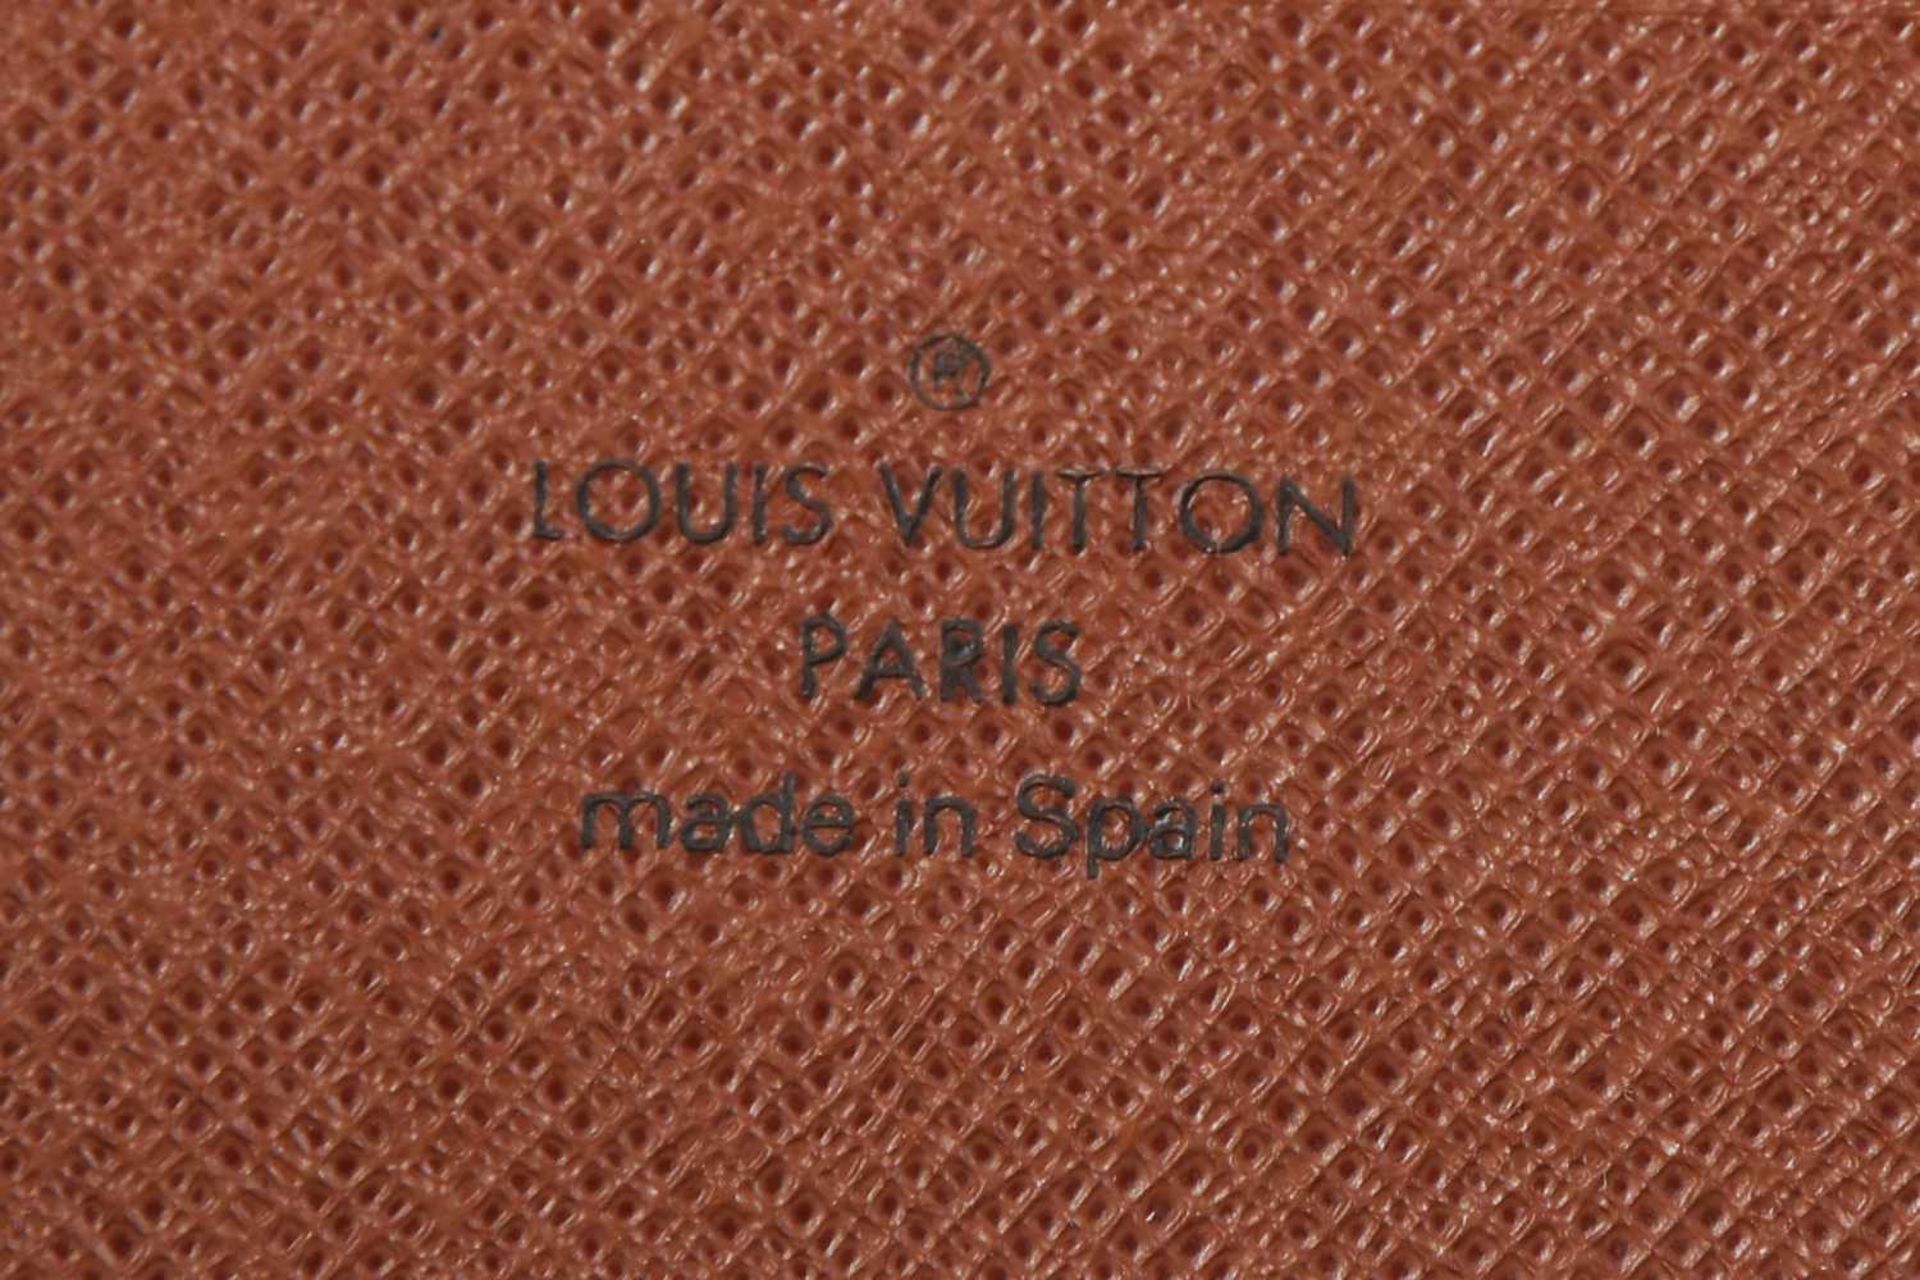 LOUIS VUITTON OrganizerMonogramm-Canvas und Leder, braun, 2008 gekauft, ca. 21x12cm - Image 2 of 2